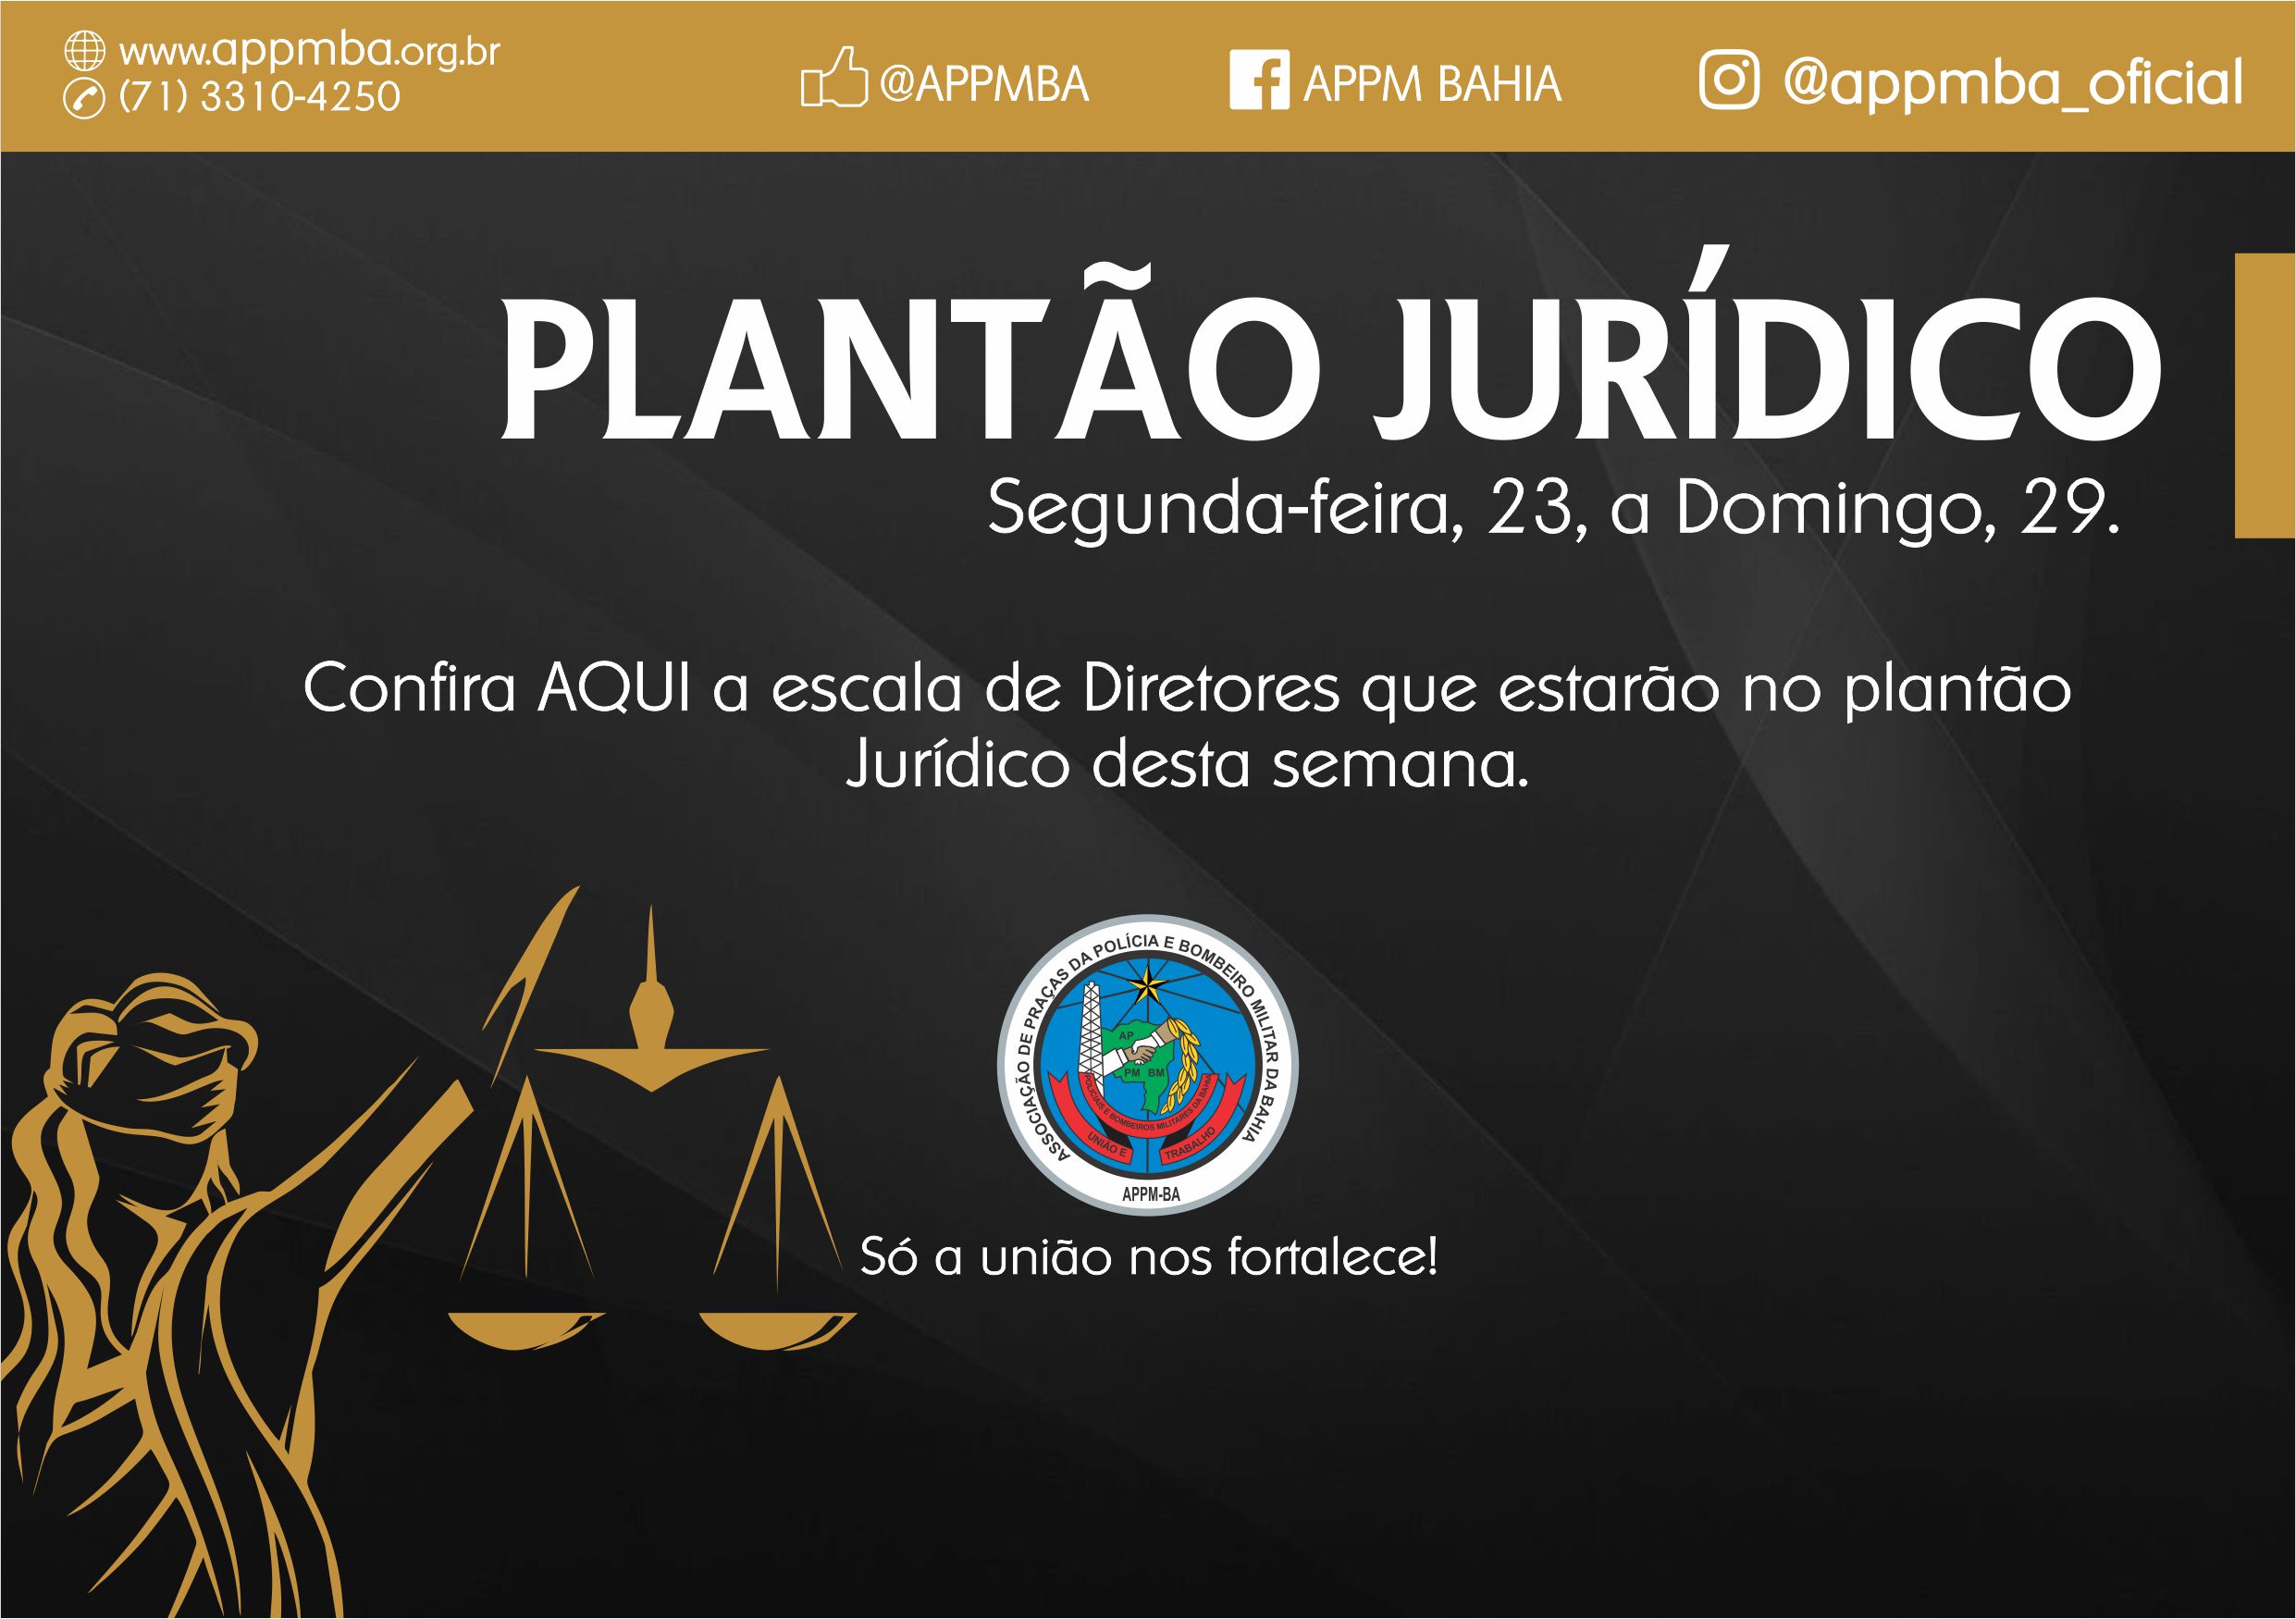 Plantão Jurídico APPM-BA, dias 23 à 29/9/2019